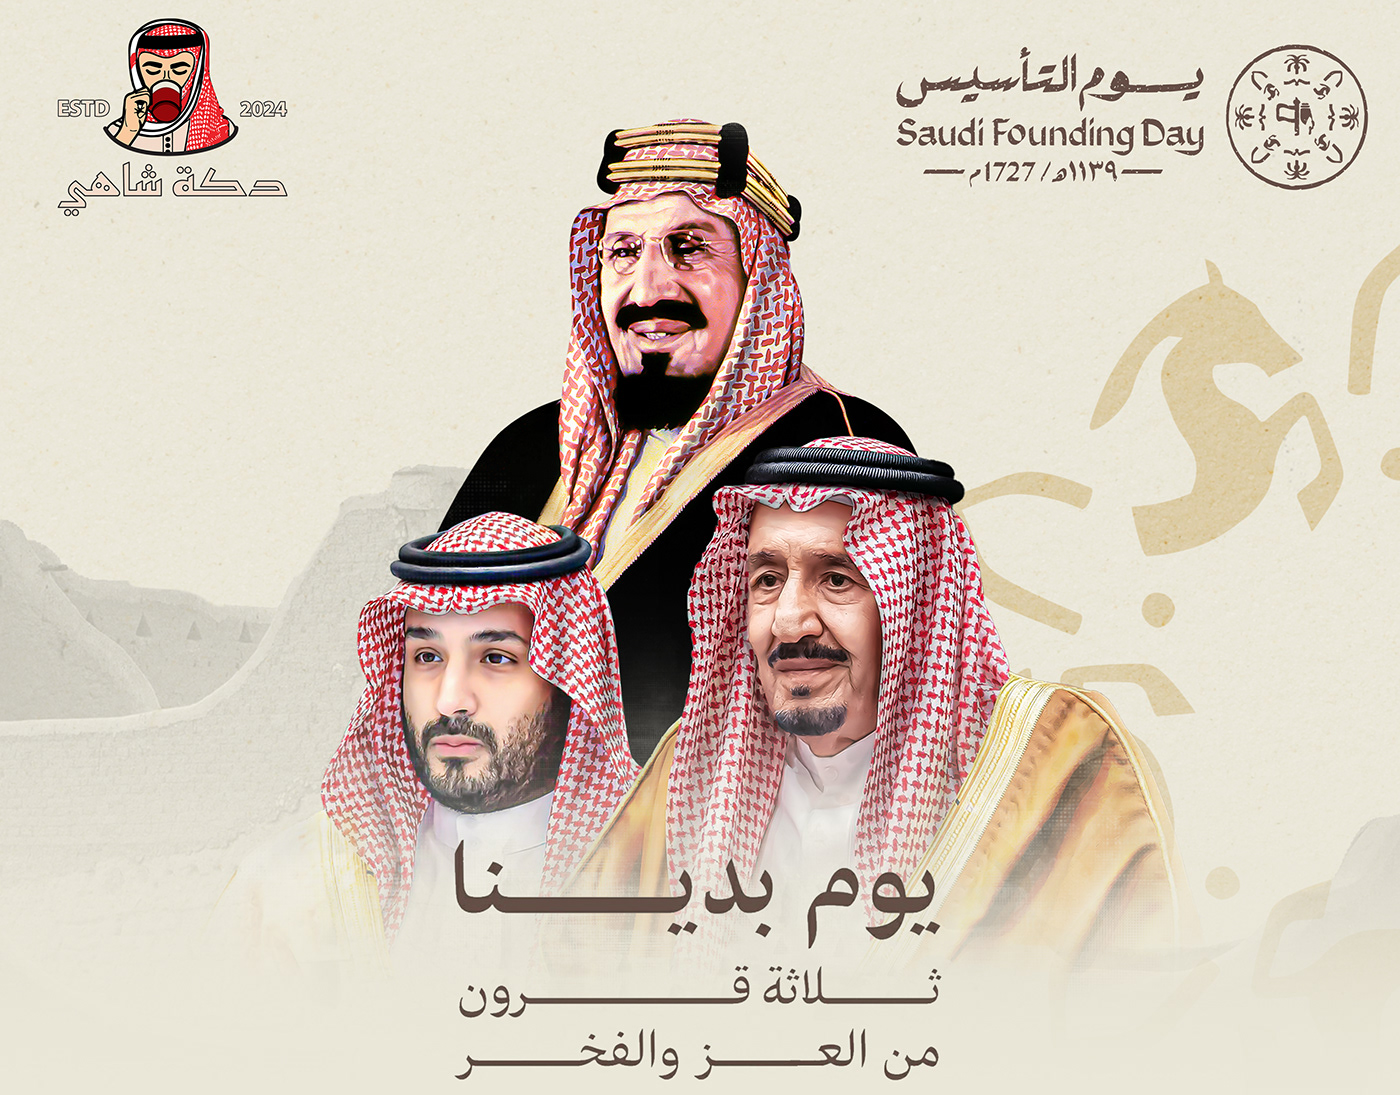 يوم التأسيس يوم التأسيس السعودي Saudi Arabia Advertising  sticker شاي saudi founding day makkah شاهي يوم التأسيس يوم بدينا